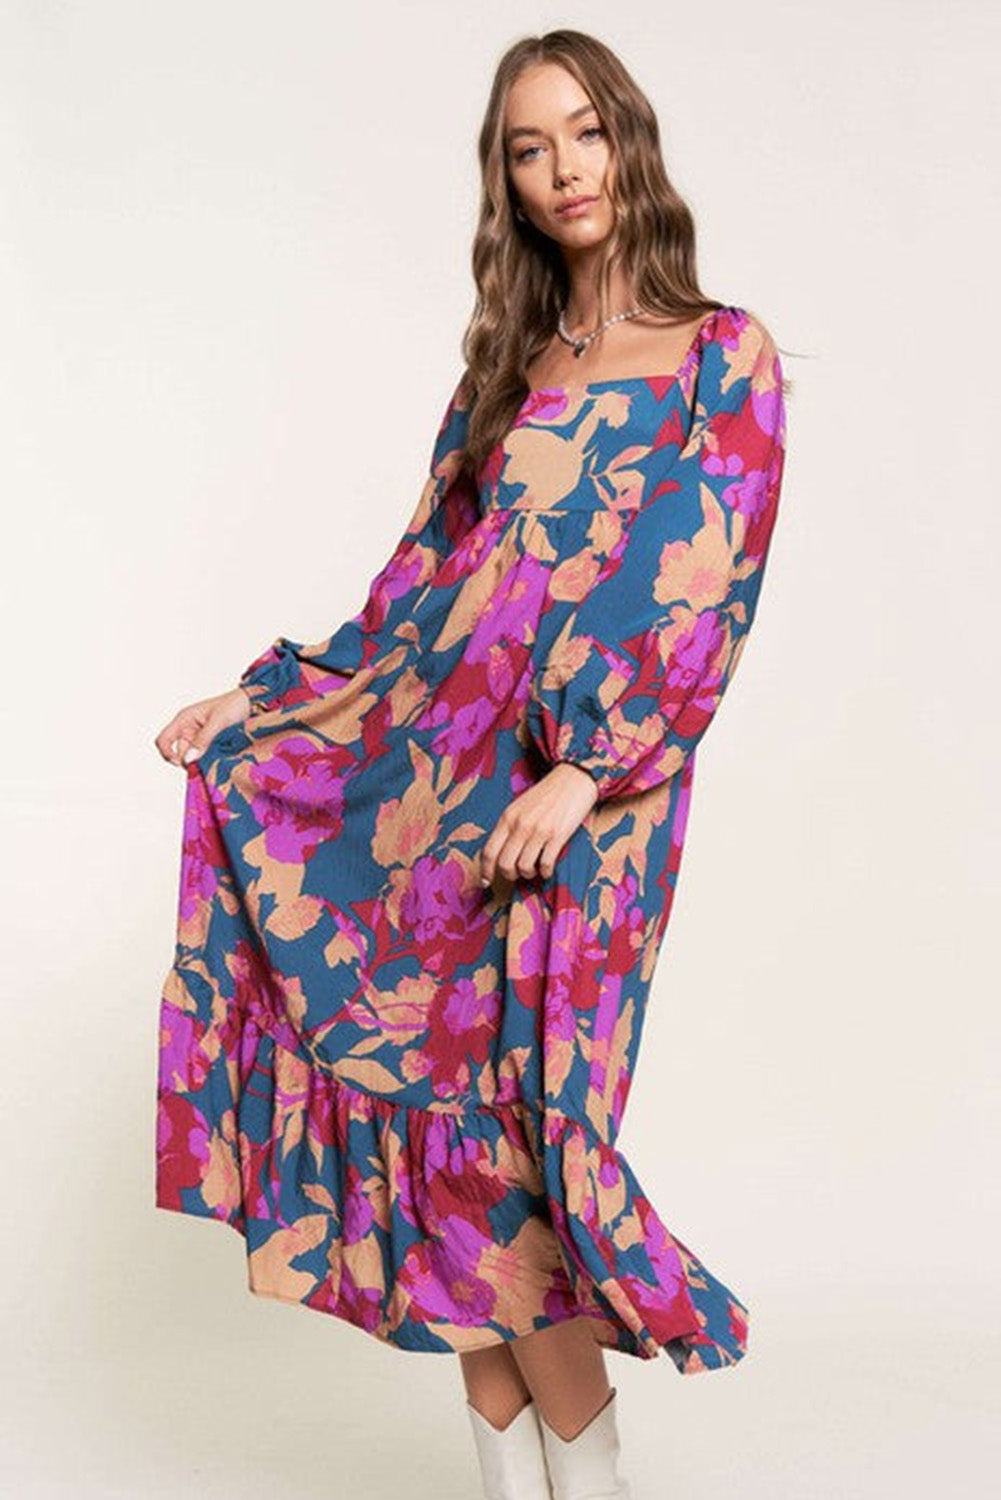 Mehrfarbiges Kleid mit Blumendruck, quadratischem Ausschnitt, Rüschen und hoher Taille